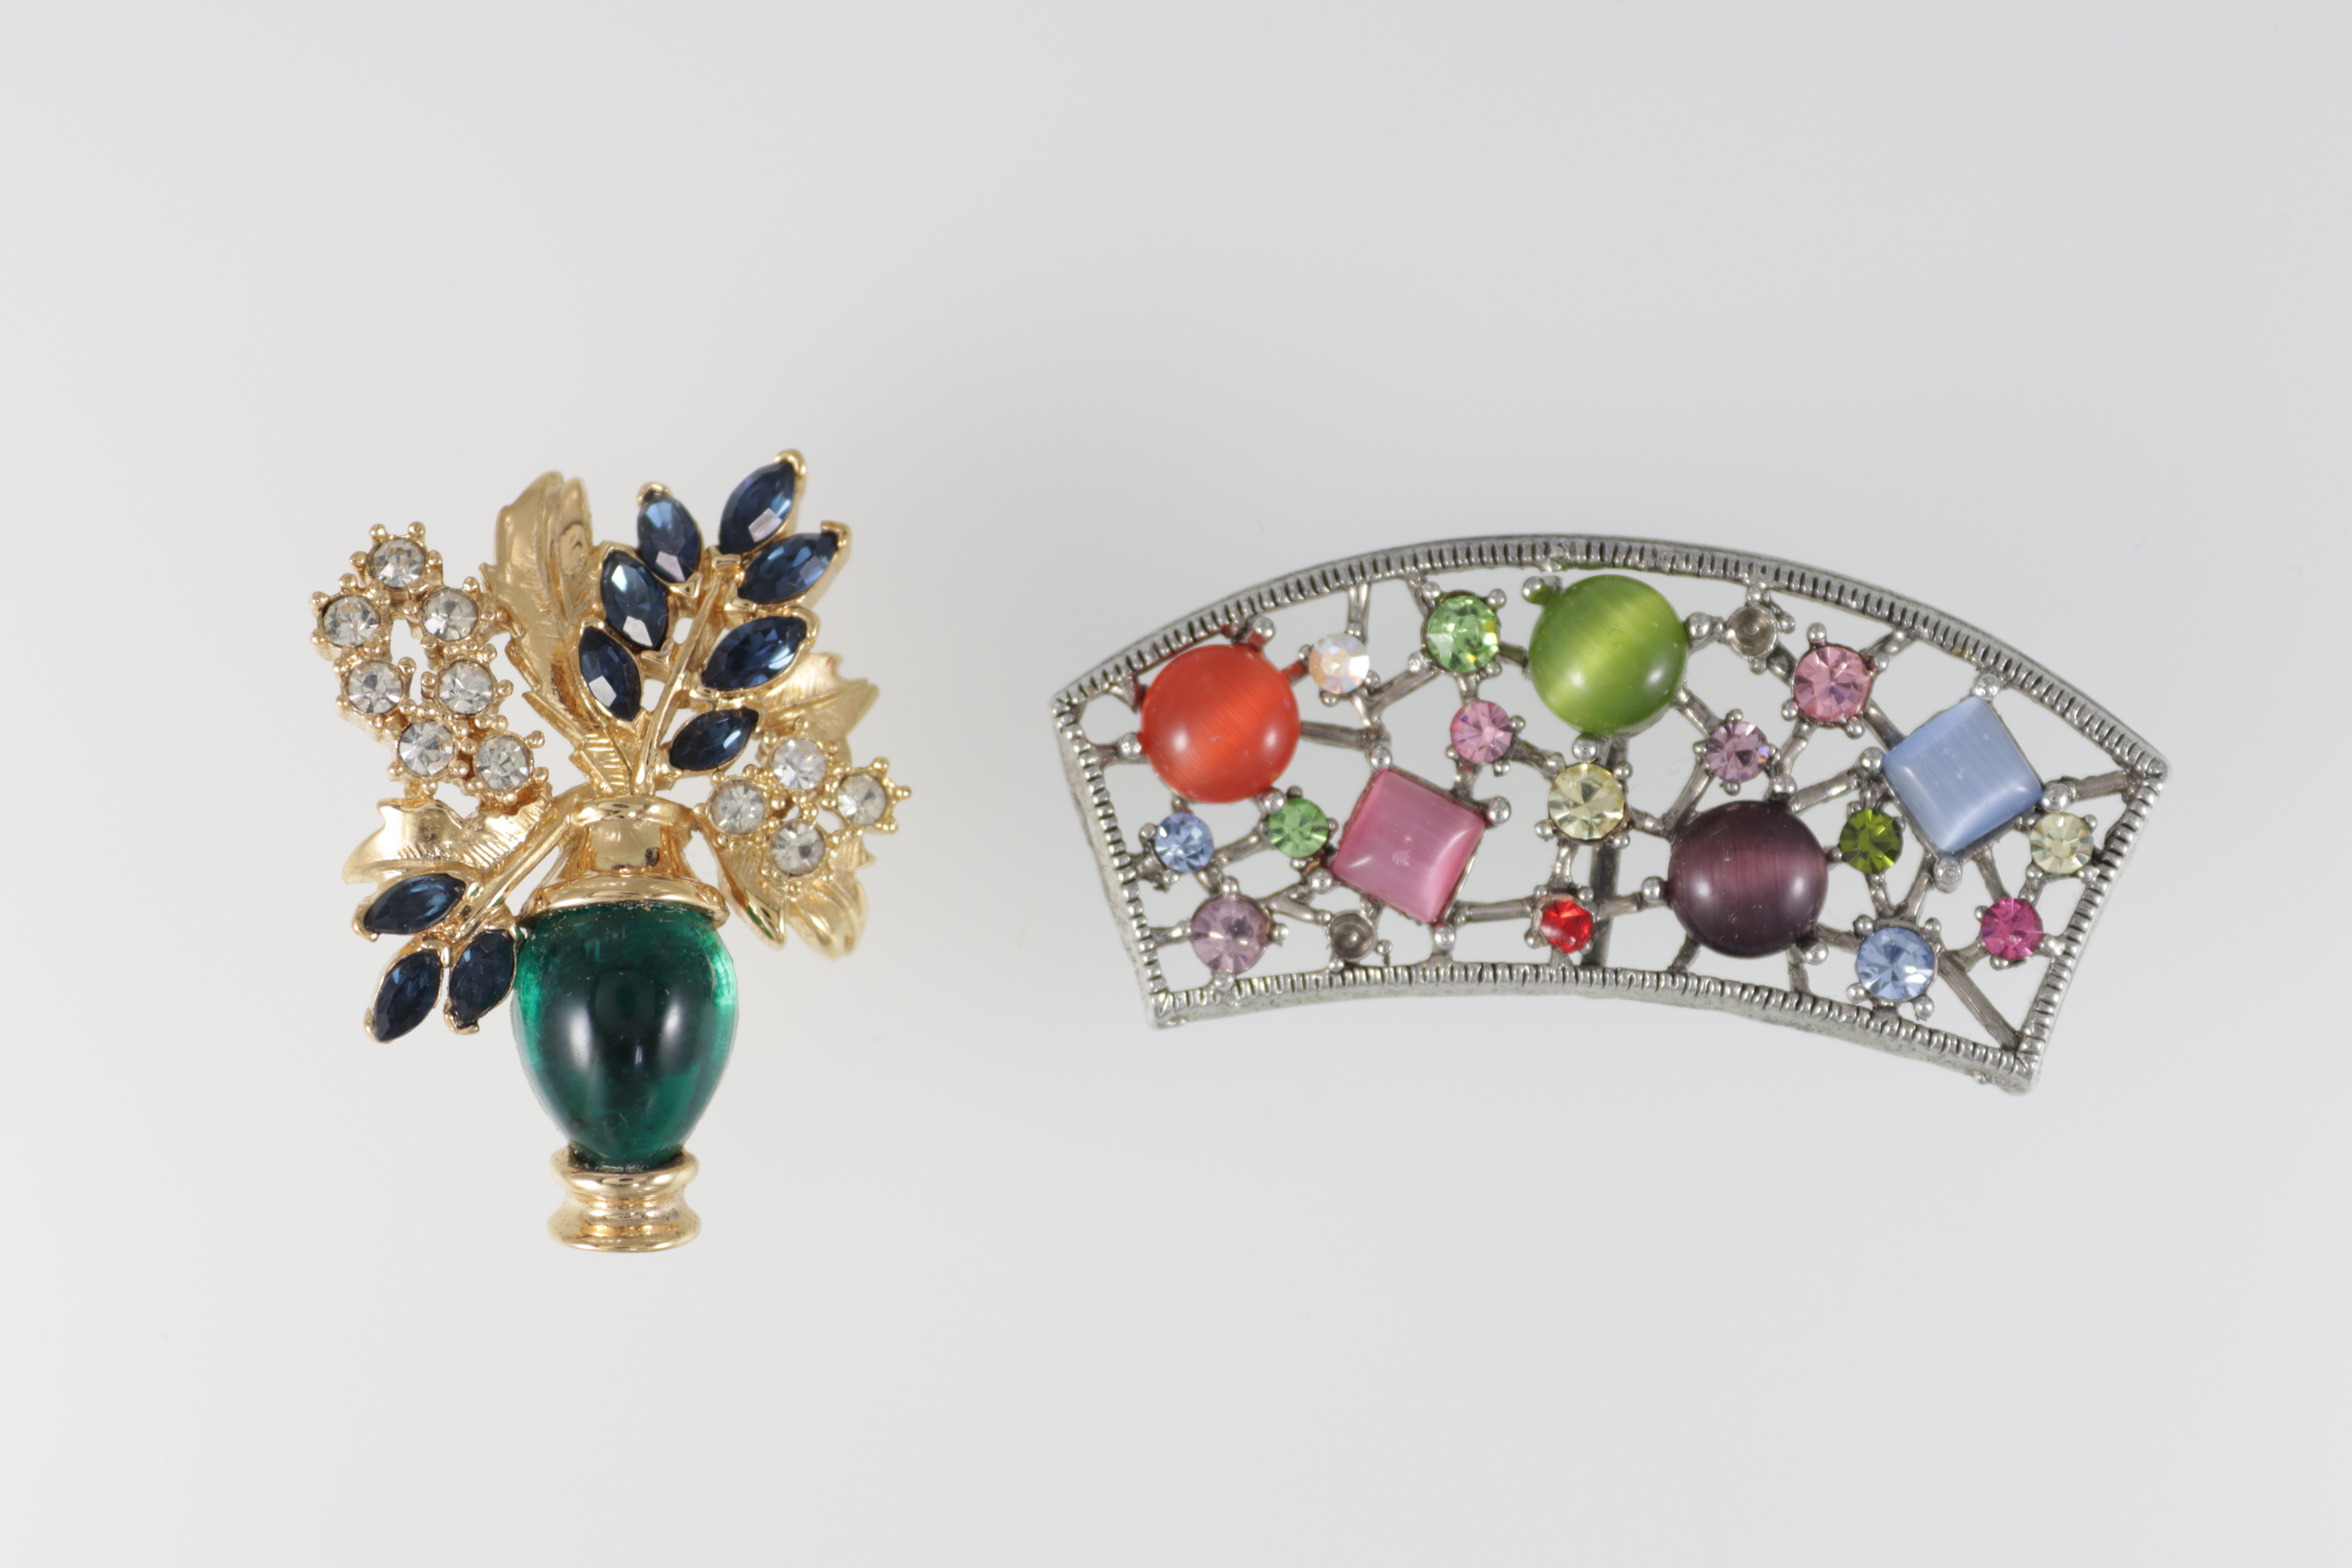 「宝石の魅力 美しさと希少性を学ぼう。Vol.2本物とニセ物」展示一例： ガラスで造られた宝石の代用品